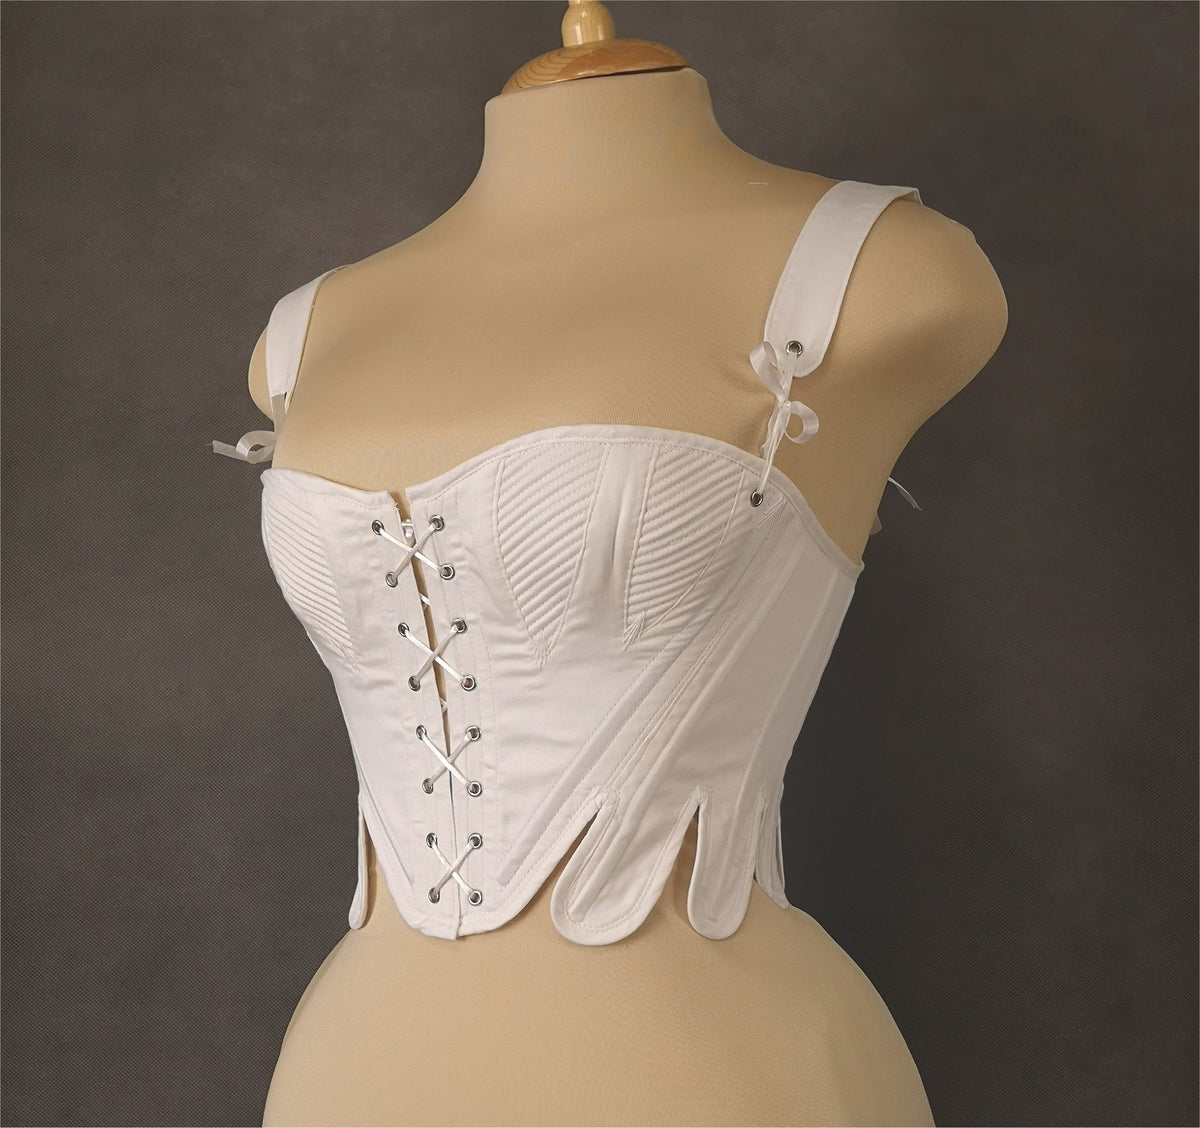 Natural Form Victorian corset 1870s - Custom order Nemuro-Corsets